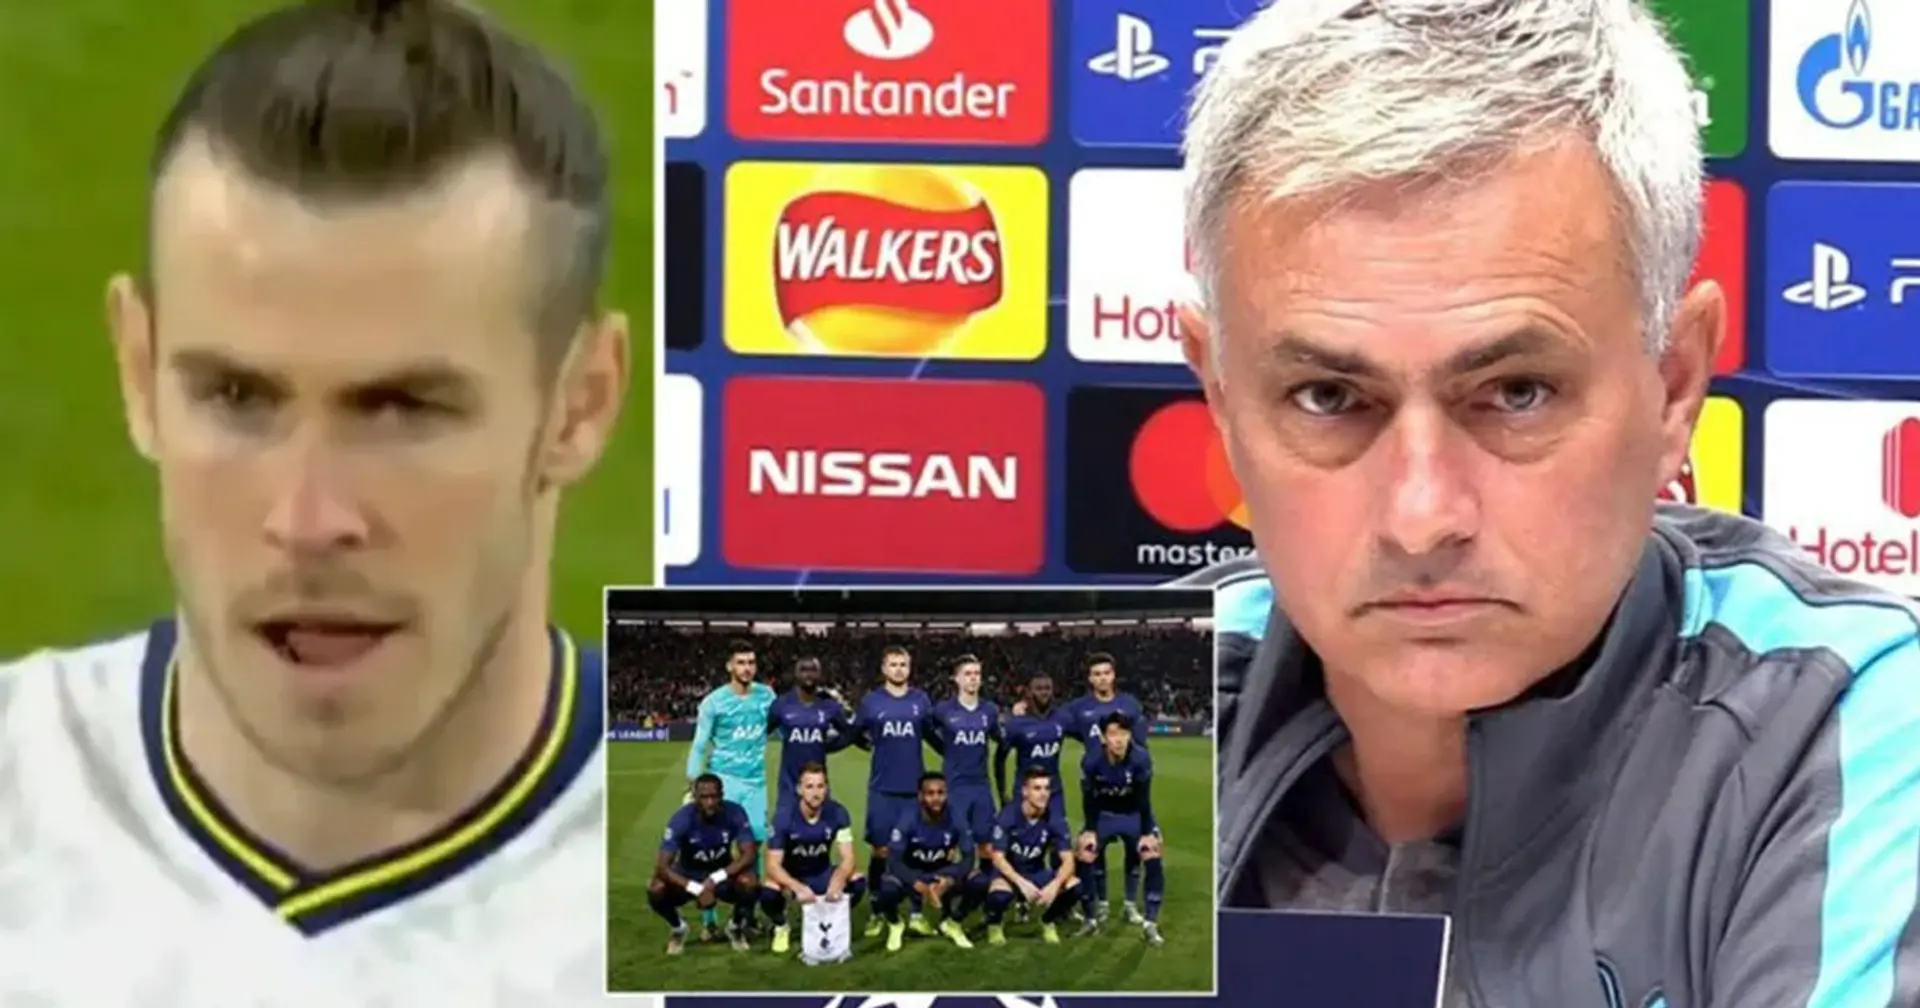 Jose Mourinho sospetta di avere talpe tra i giocatori del Tottenham, lancia una "caccia" ai traditori